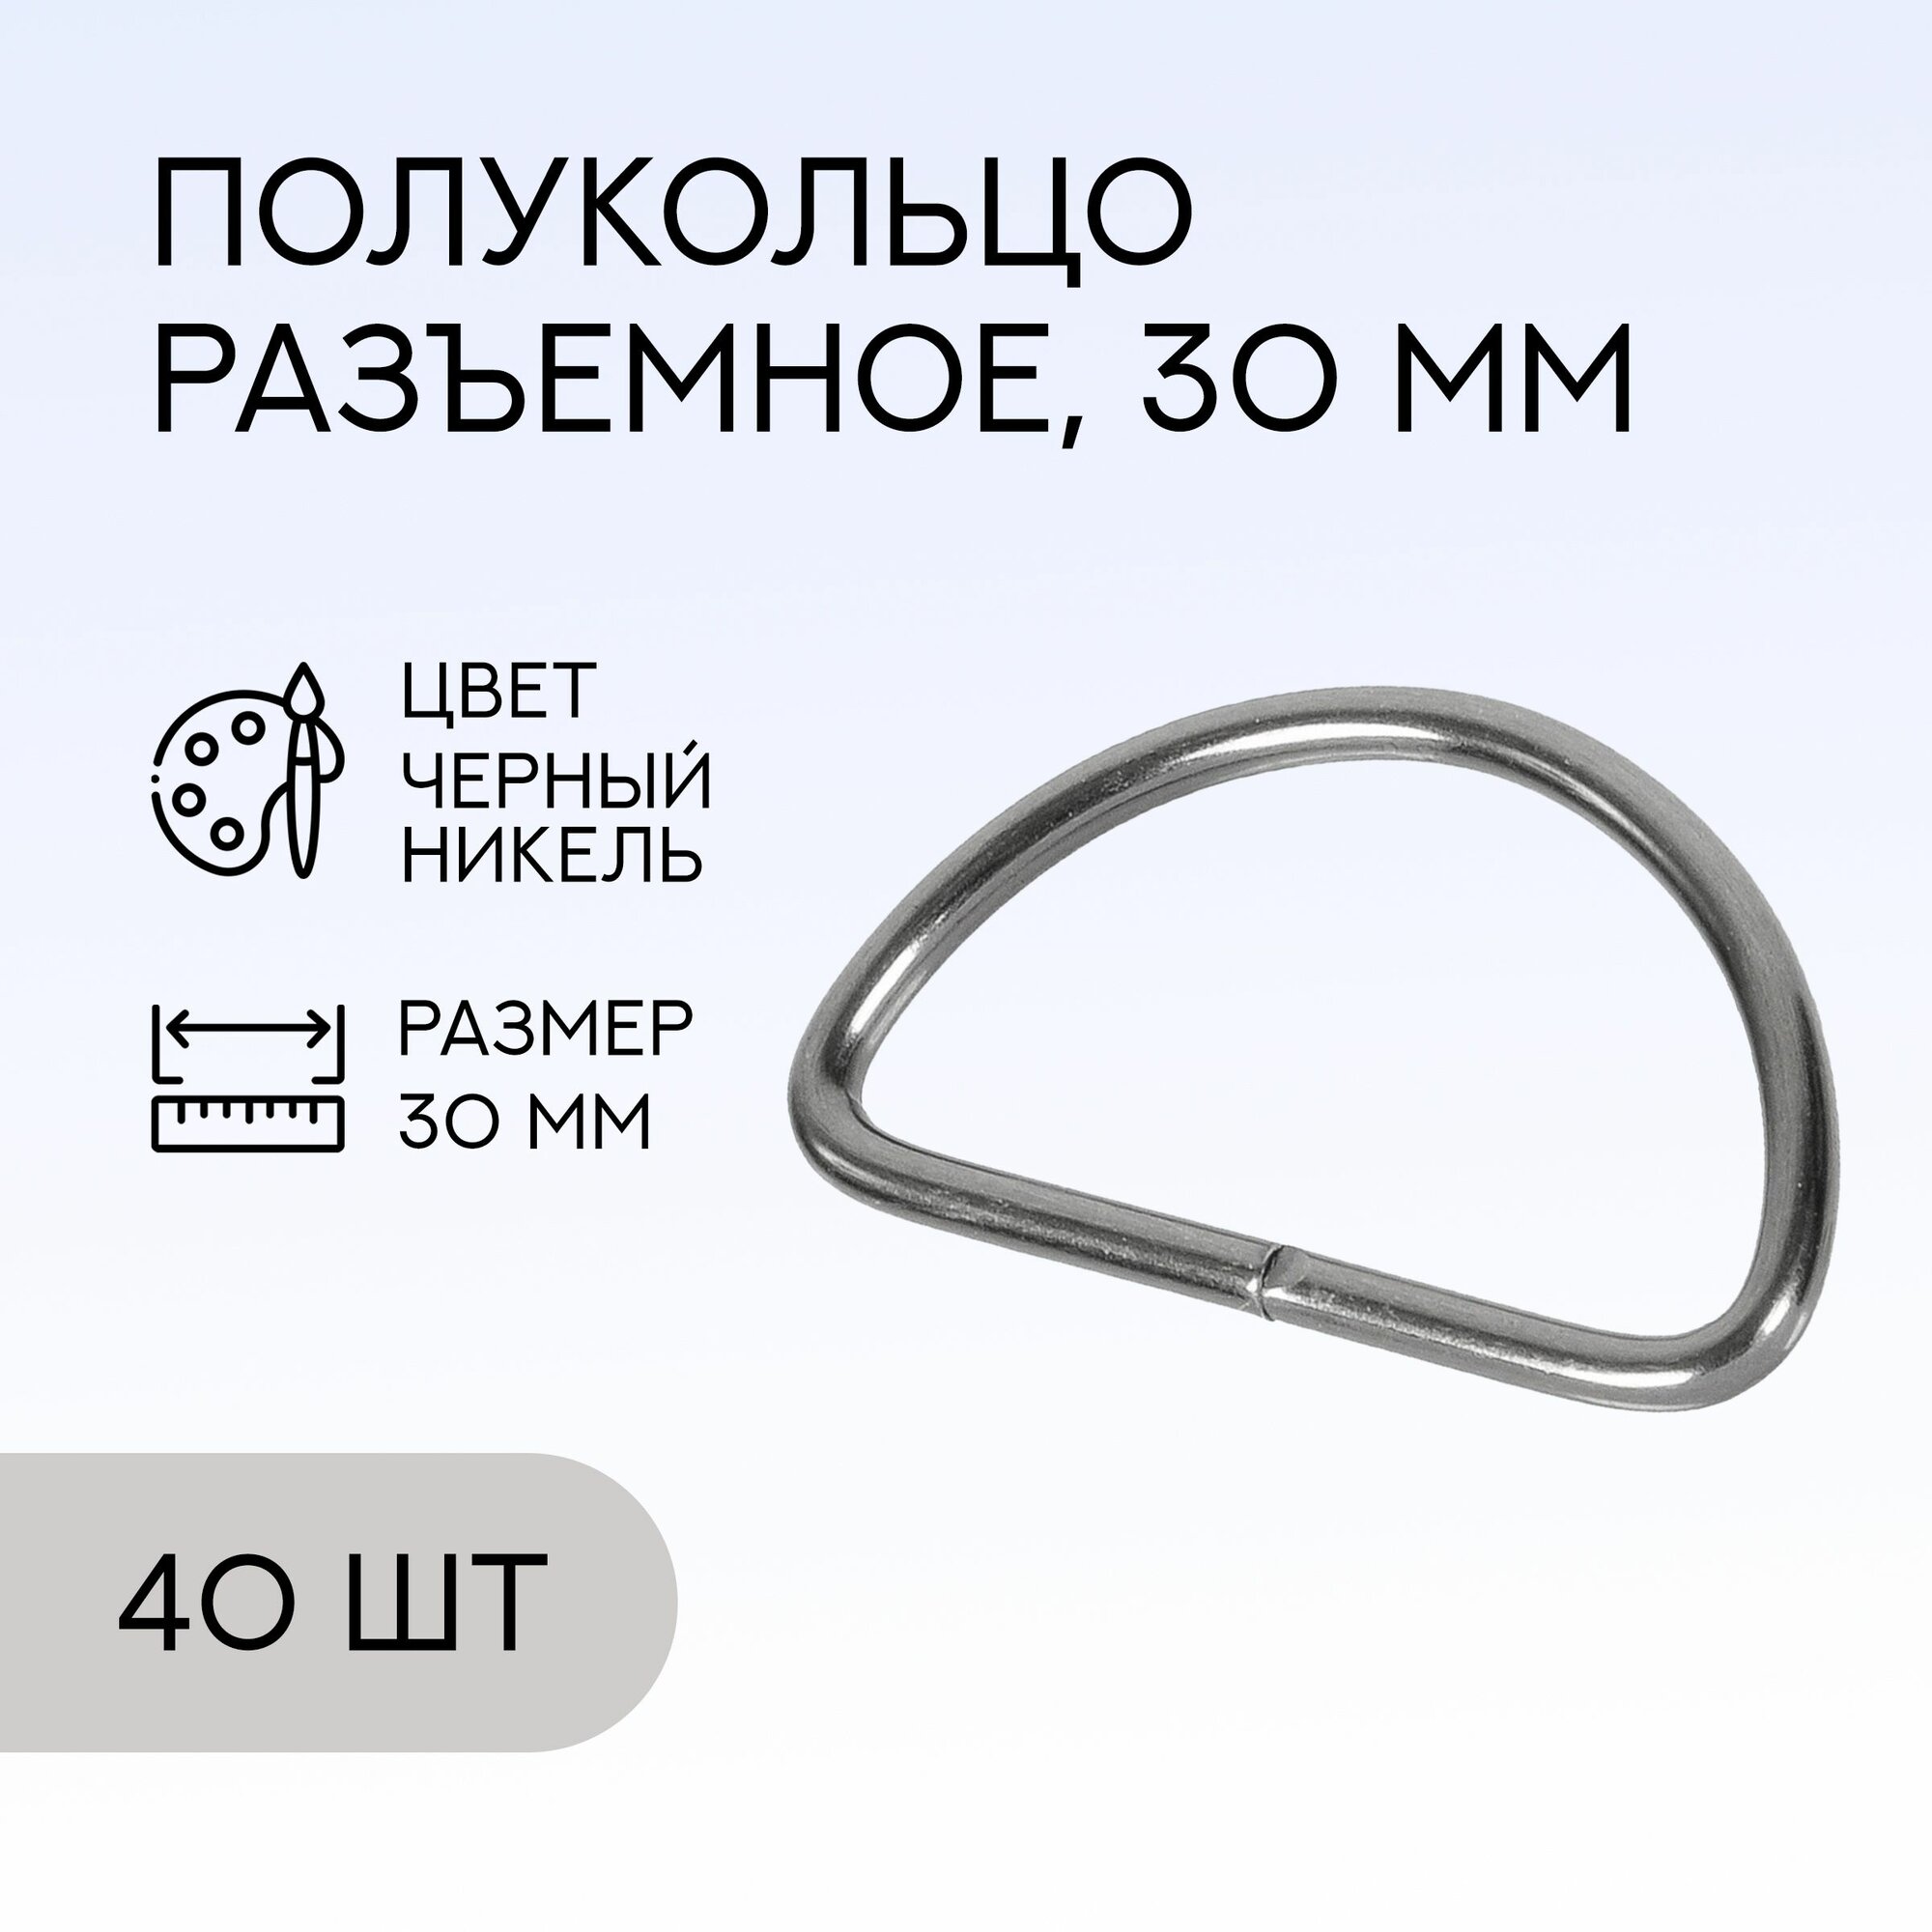 Полукольцо разъемное, 30 мм, черный никель, 40 шт. / кольцо для сумок и рукоделия